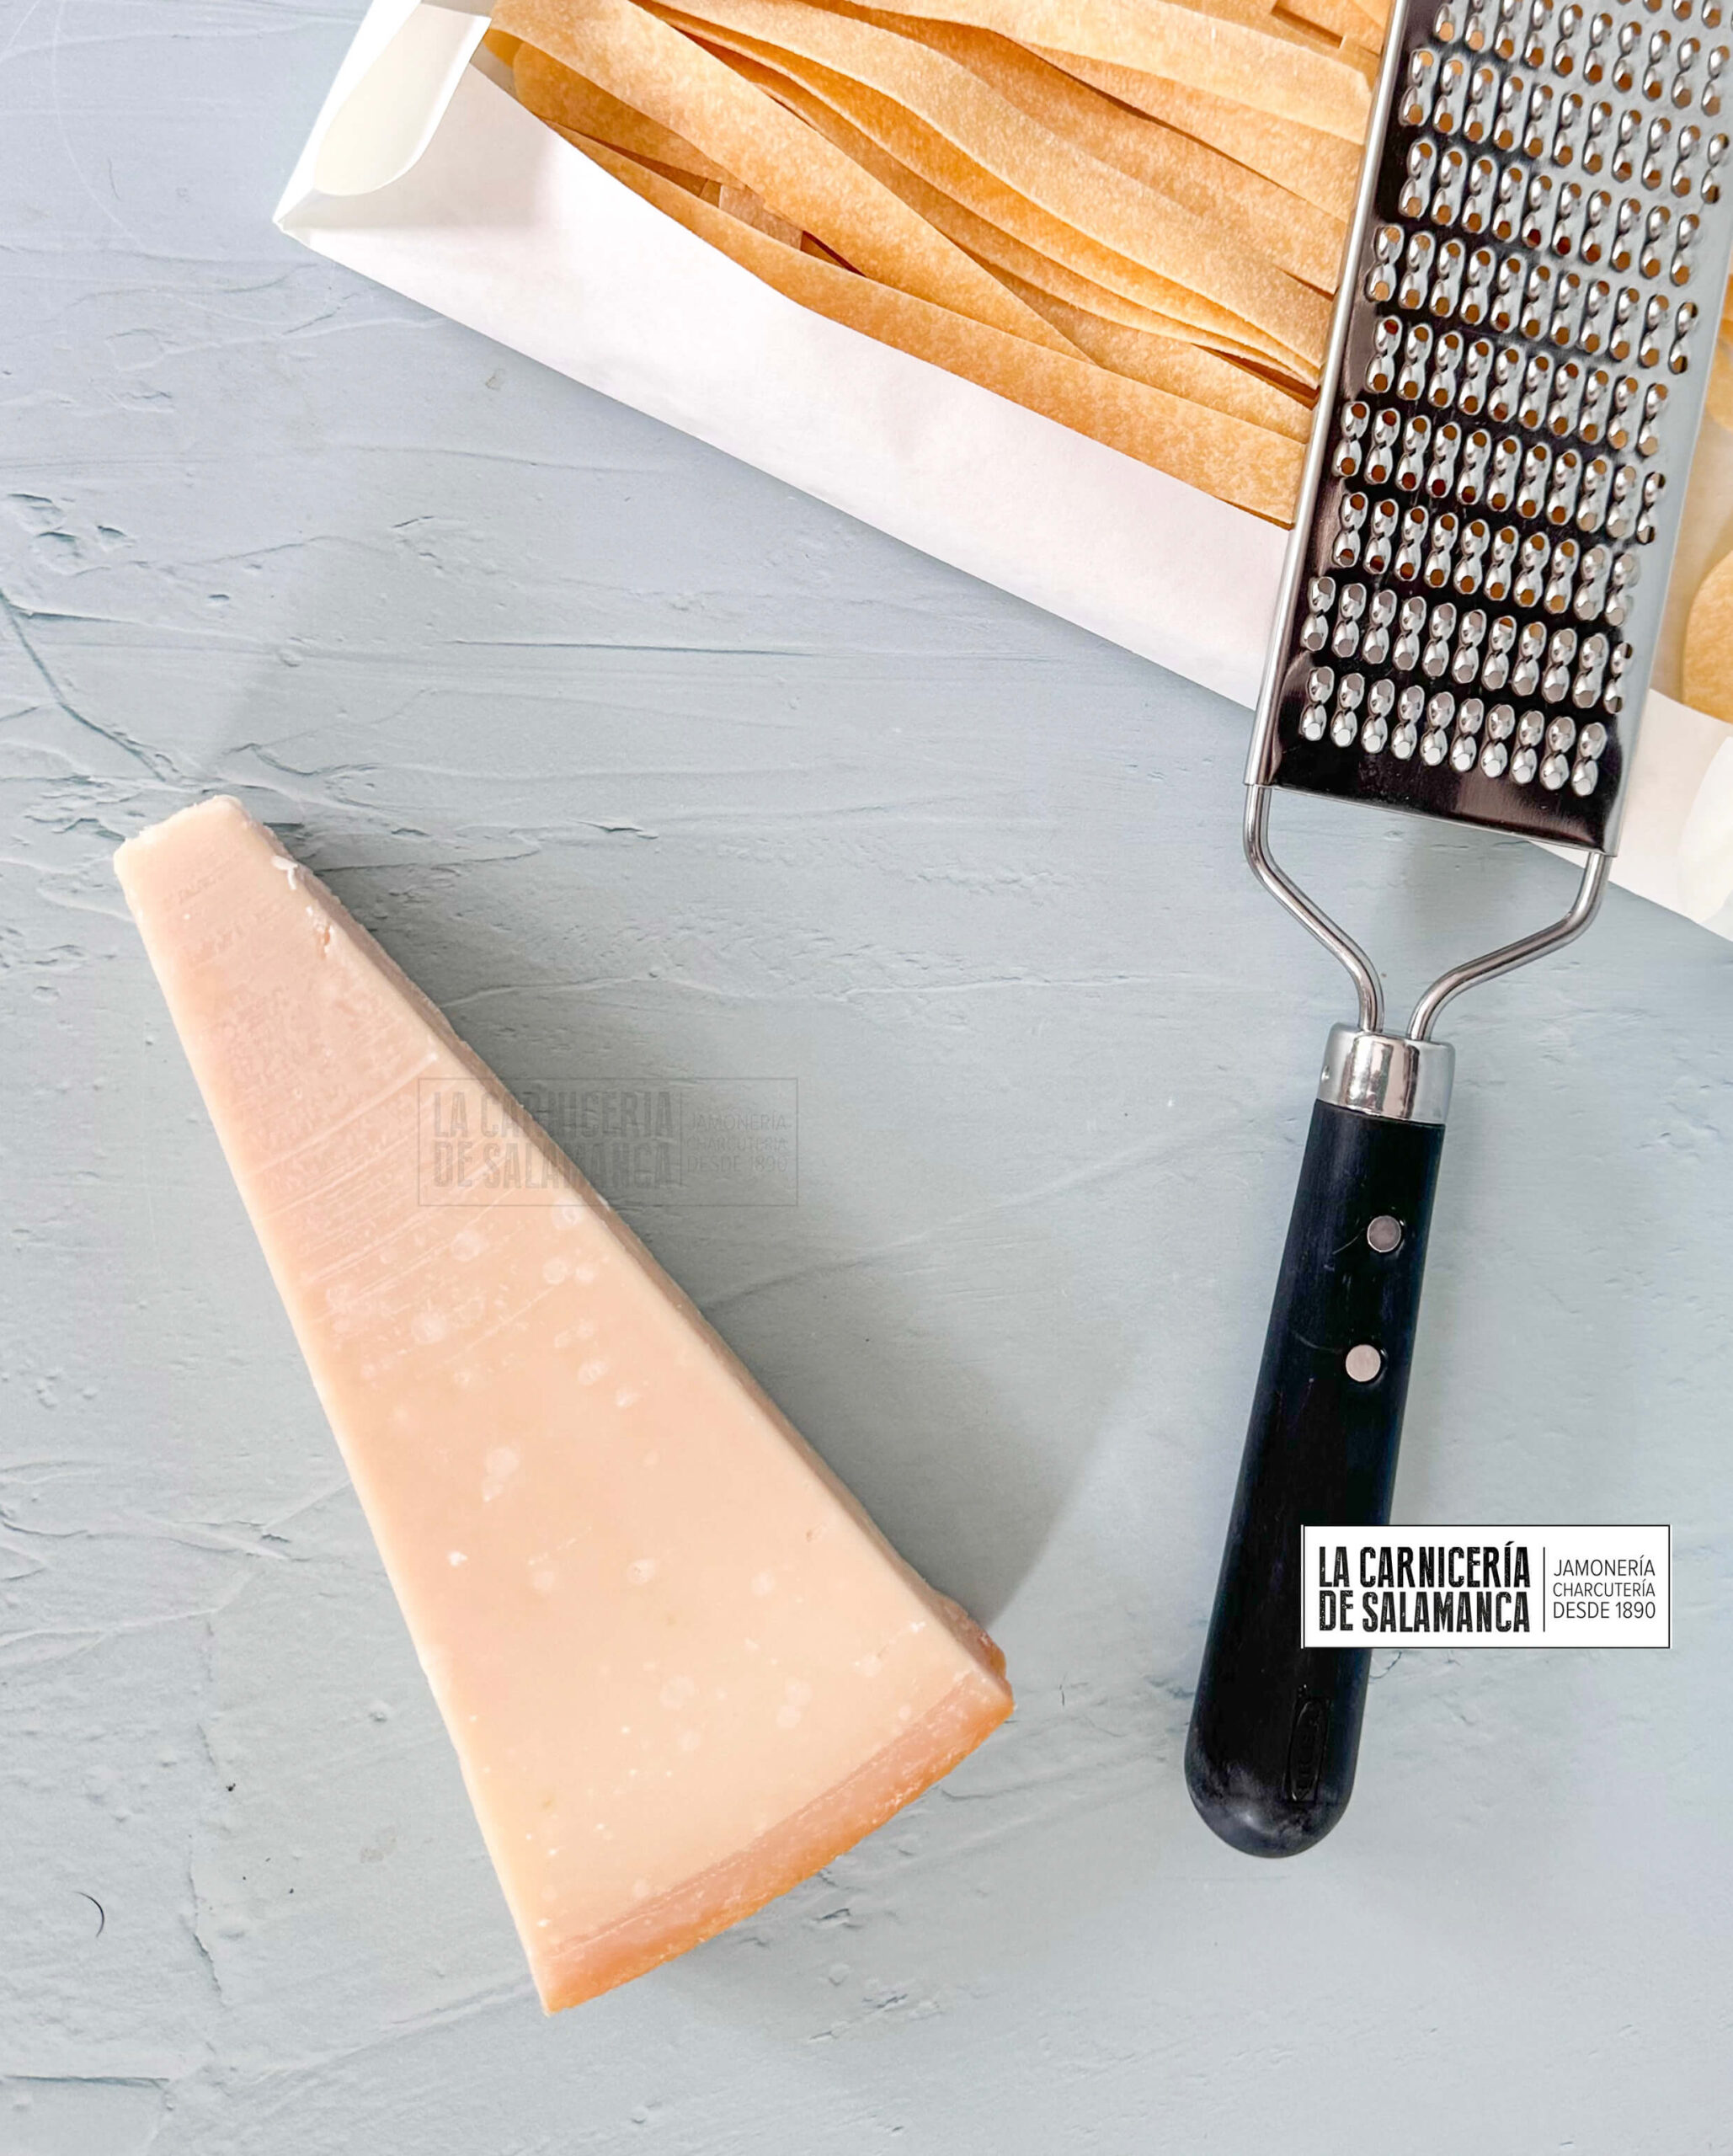 Comprar queso parmesano original en La Carnicería de Salamanca, comprar queso online, queso parmesano a domicilio